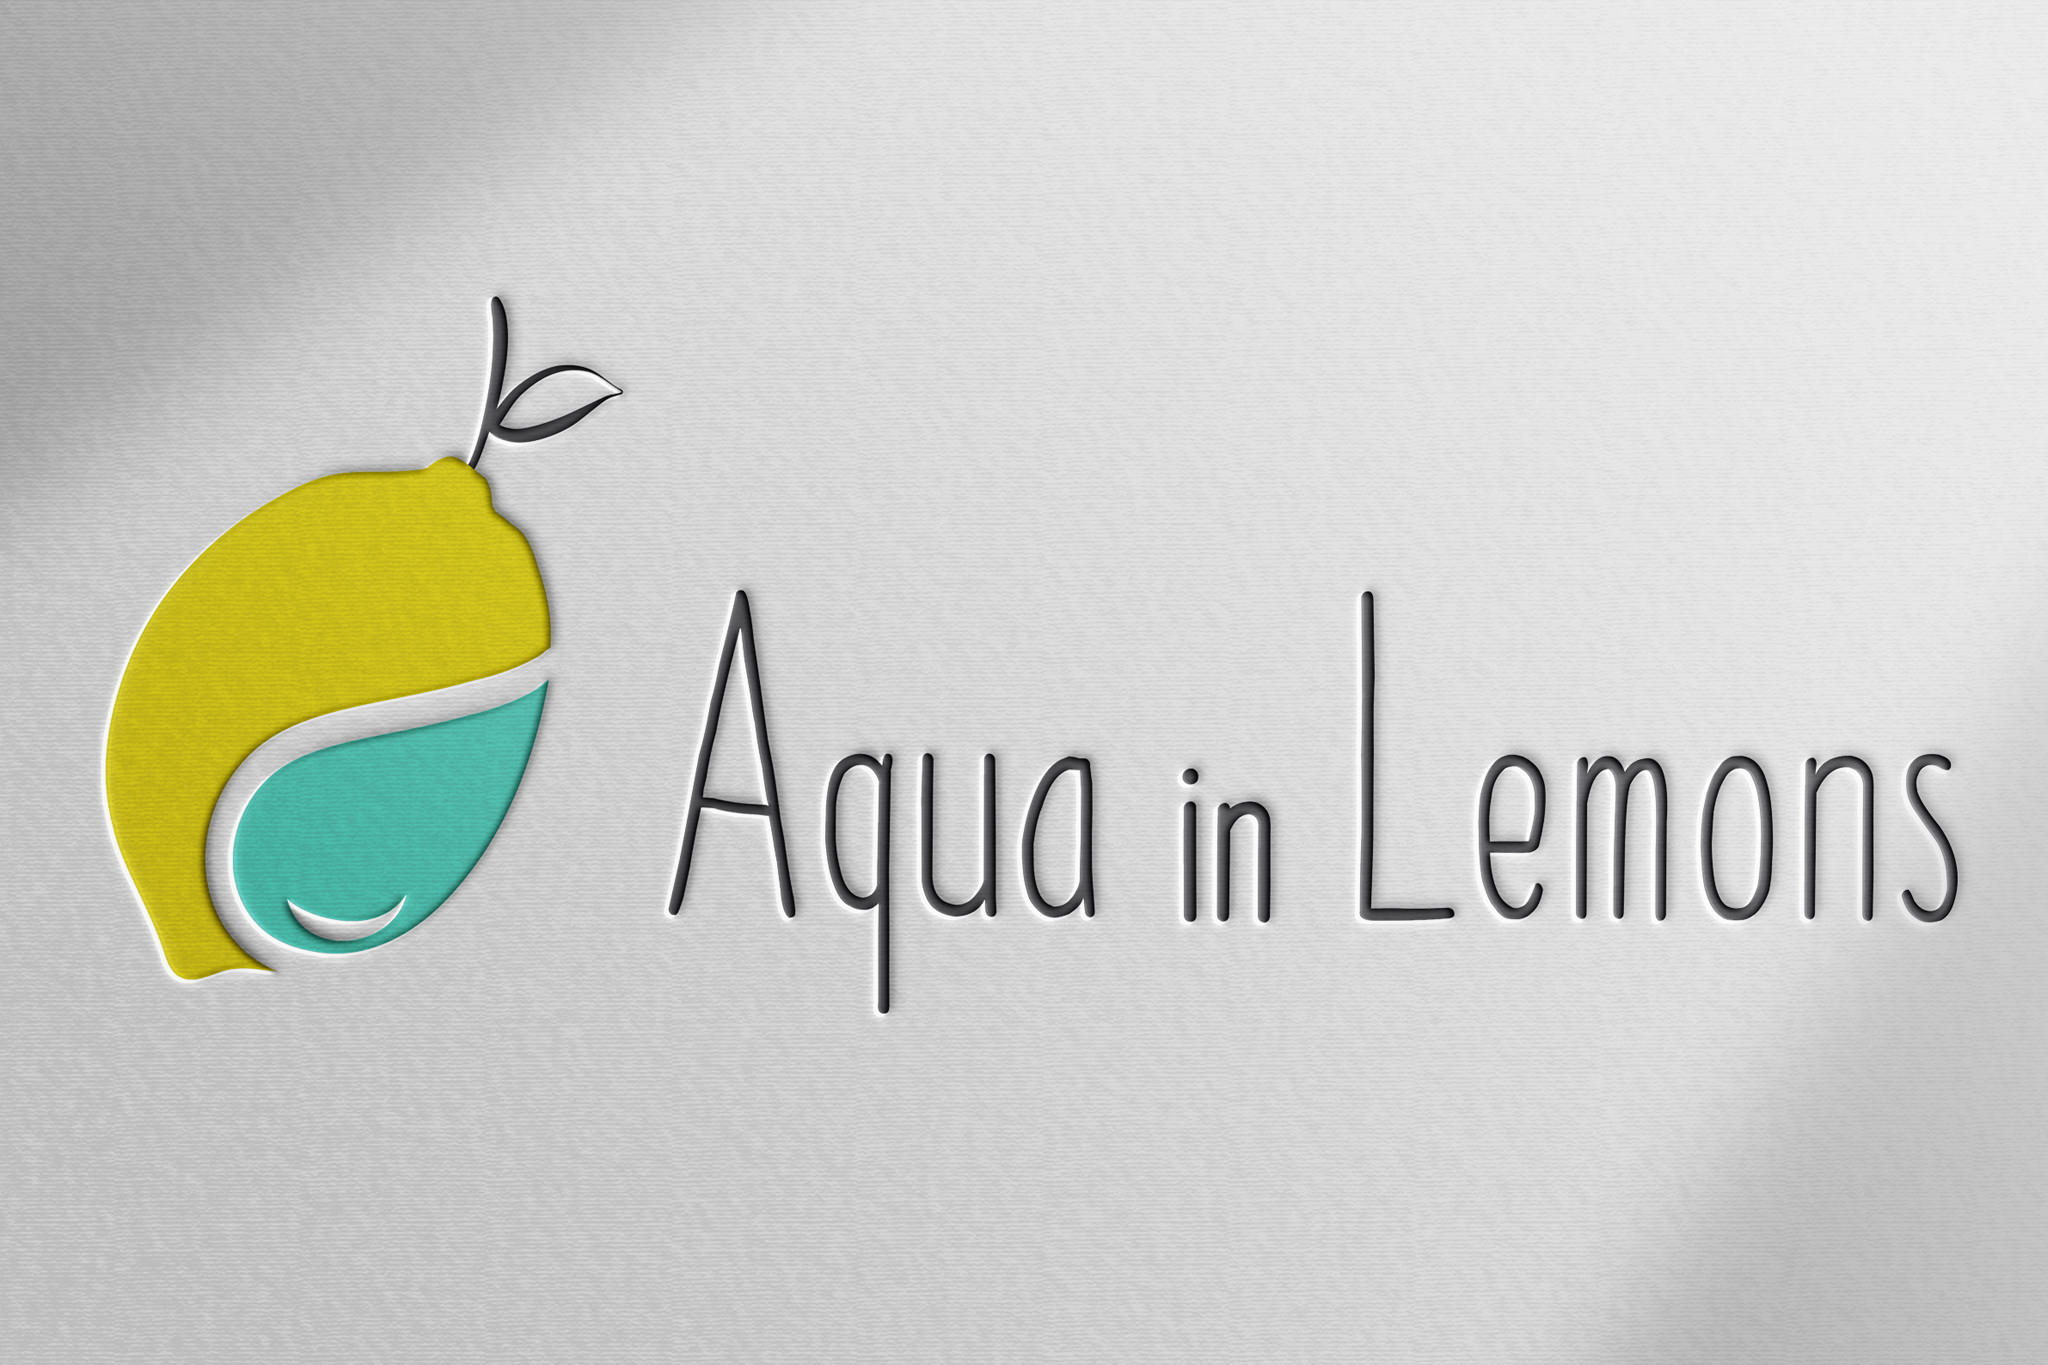 Aqua in lemons logo